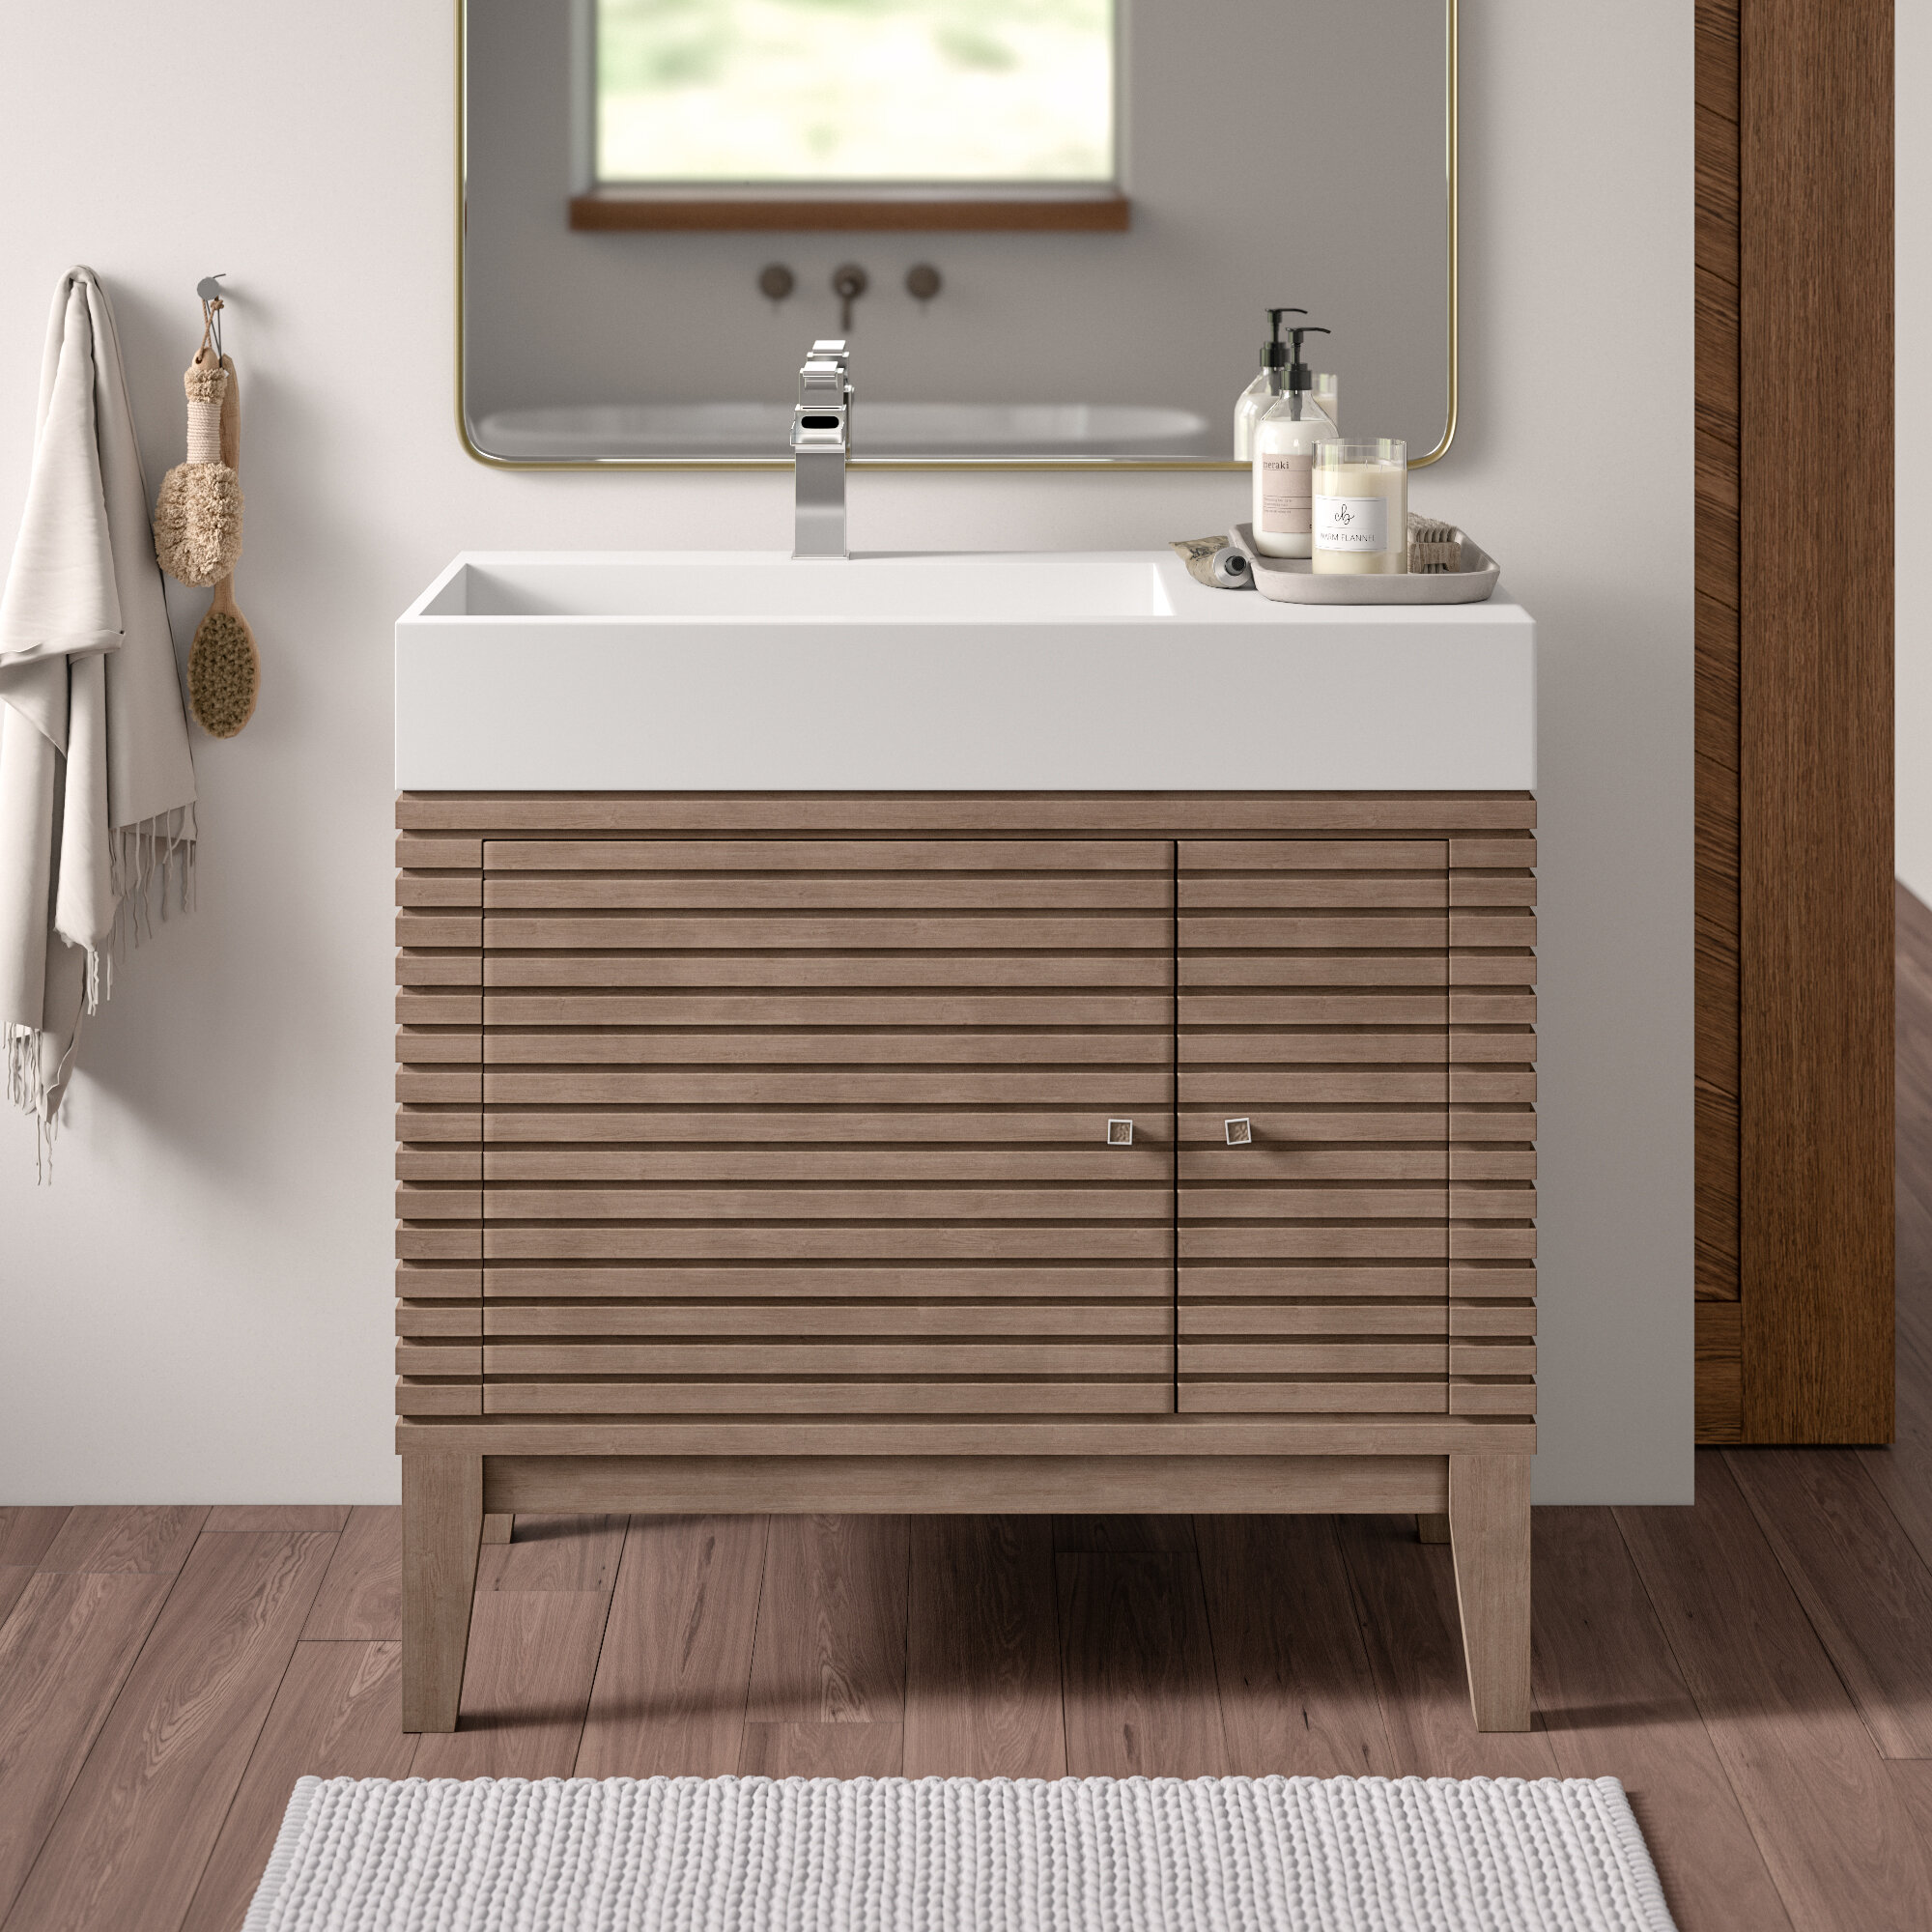 Allmodern Guyer 36 Single Bathroom Vanity Set Reviews Wayfair